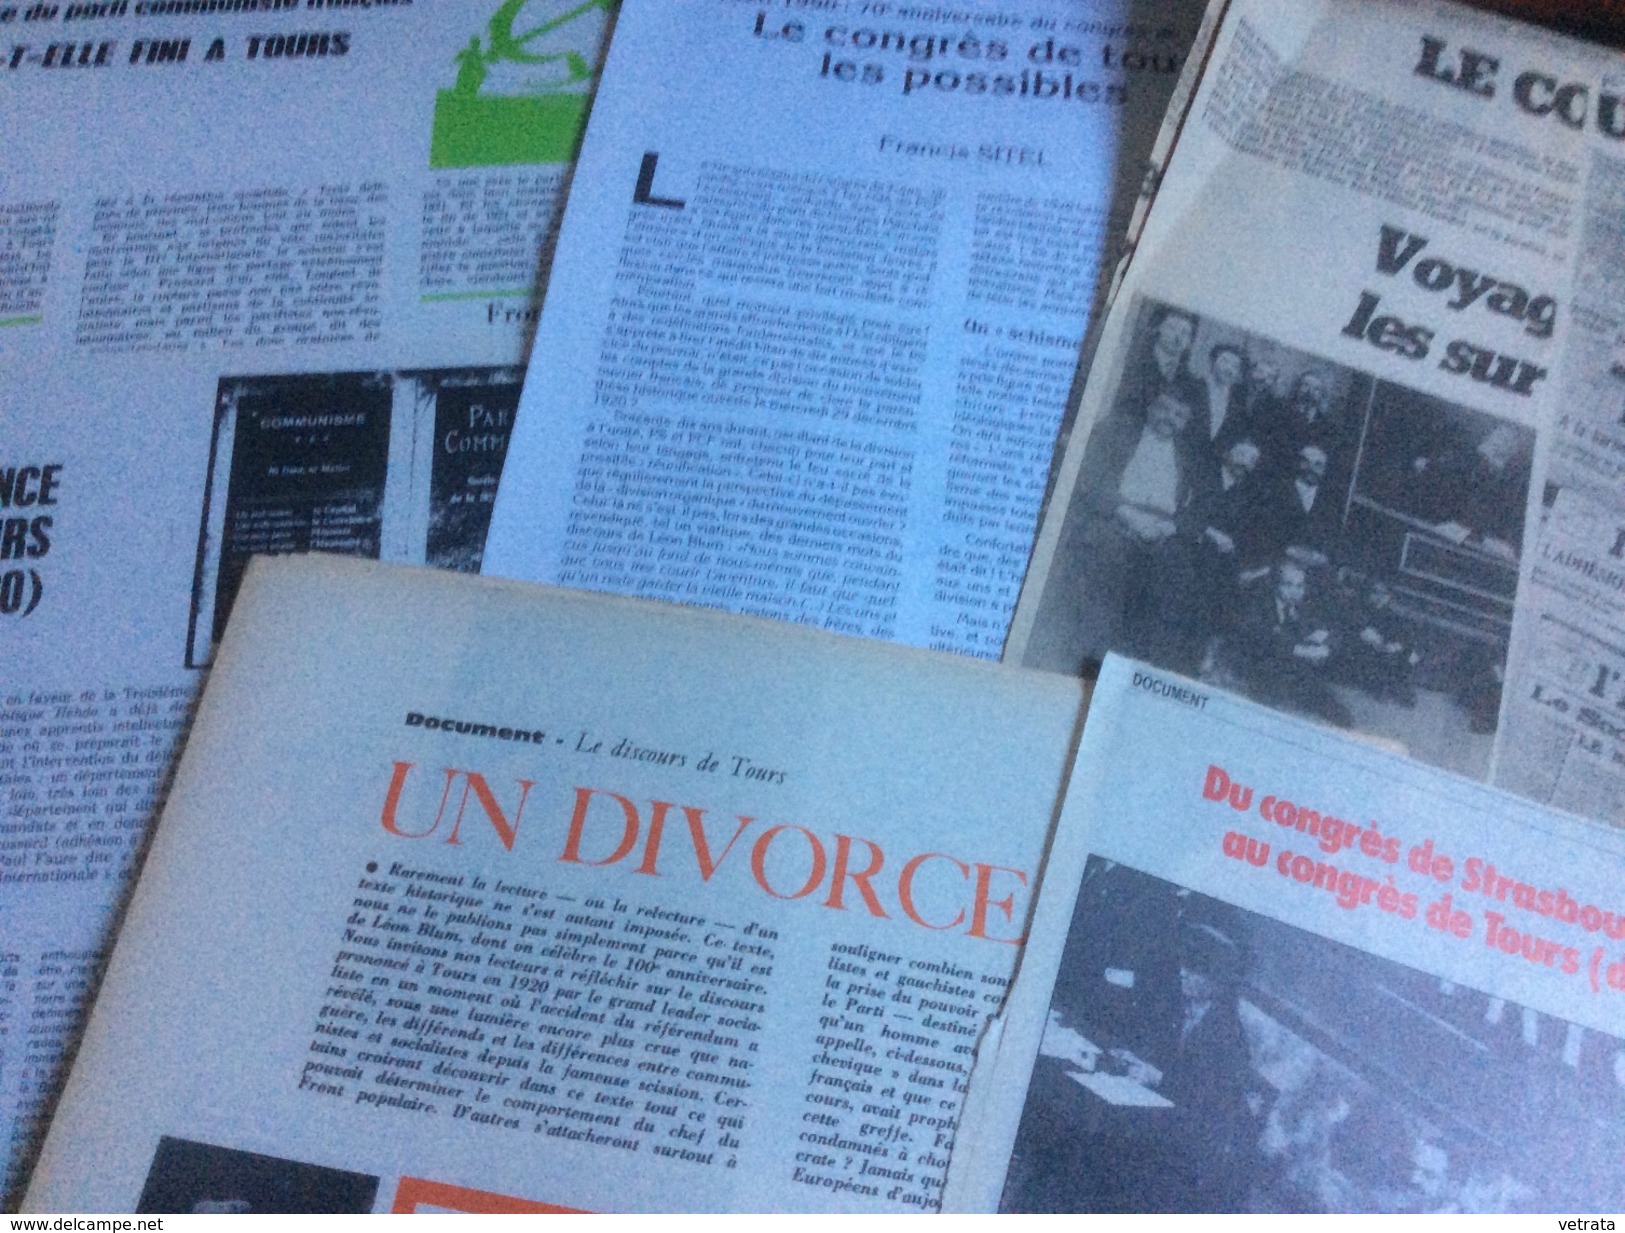 Le Congrès De Tours : 2 Articles De Politique Hebdo (1970)  - 1 Article De F. Sitel (Critique Communiste-1990) - 2 Artic - 1950 - Nu